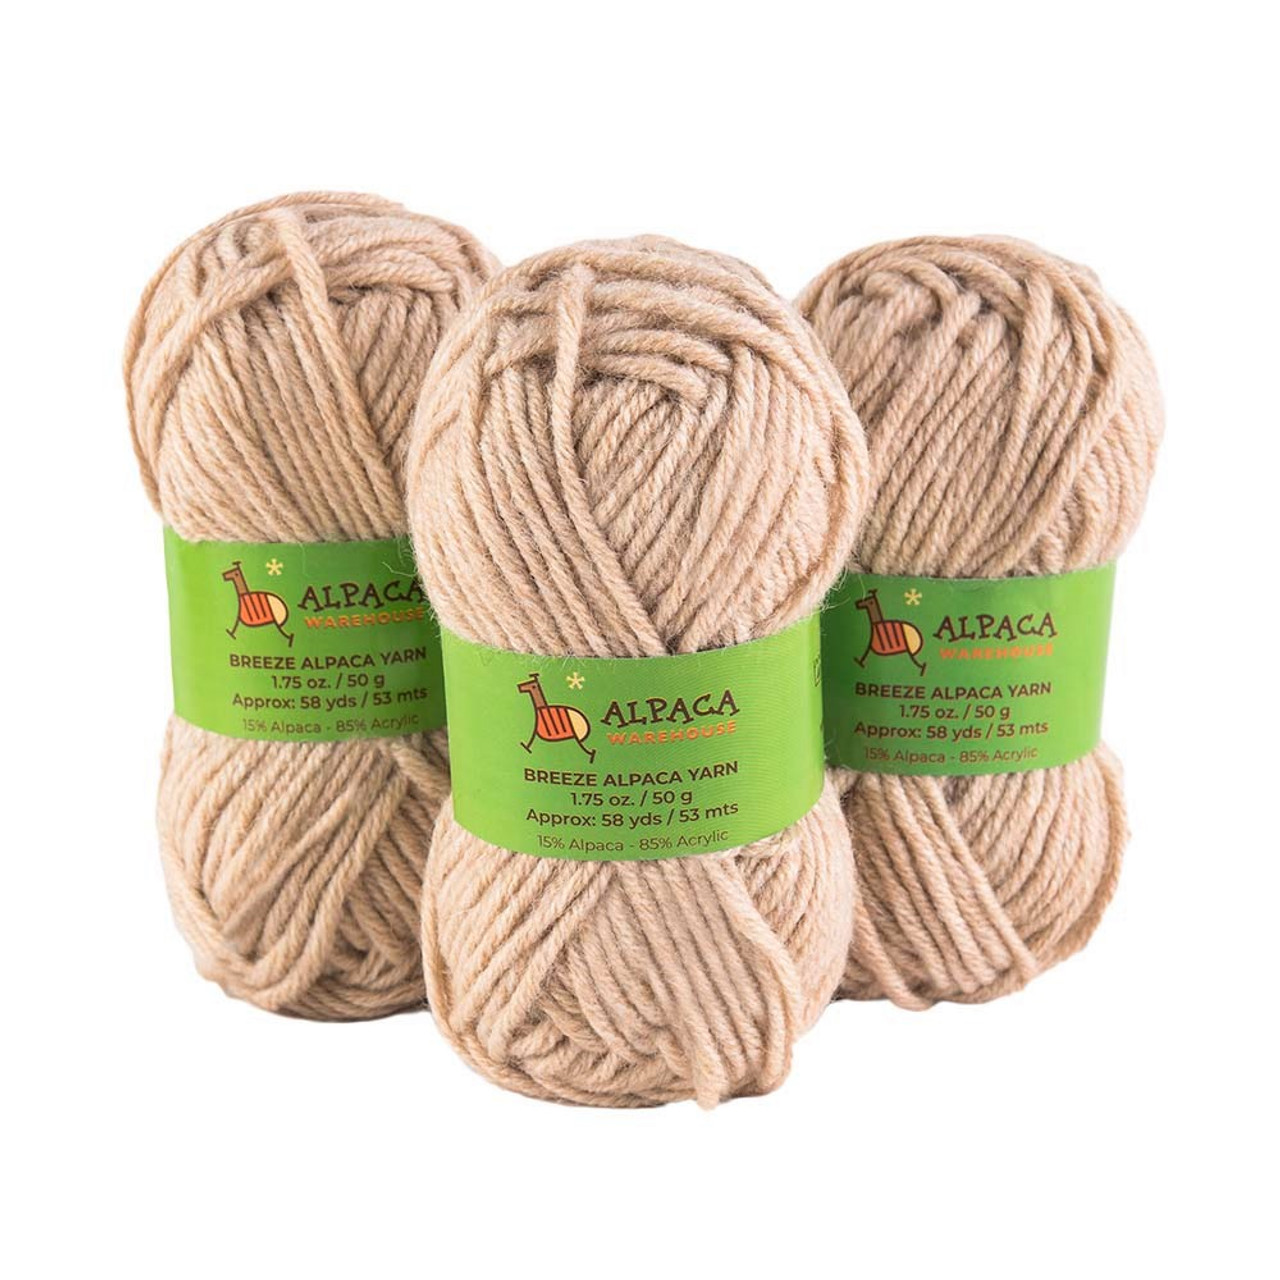 Blend Alpaca Yarn Wool 1 Skein 100 Grams Bulky Weight